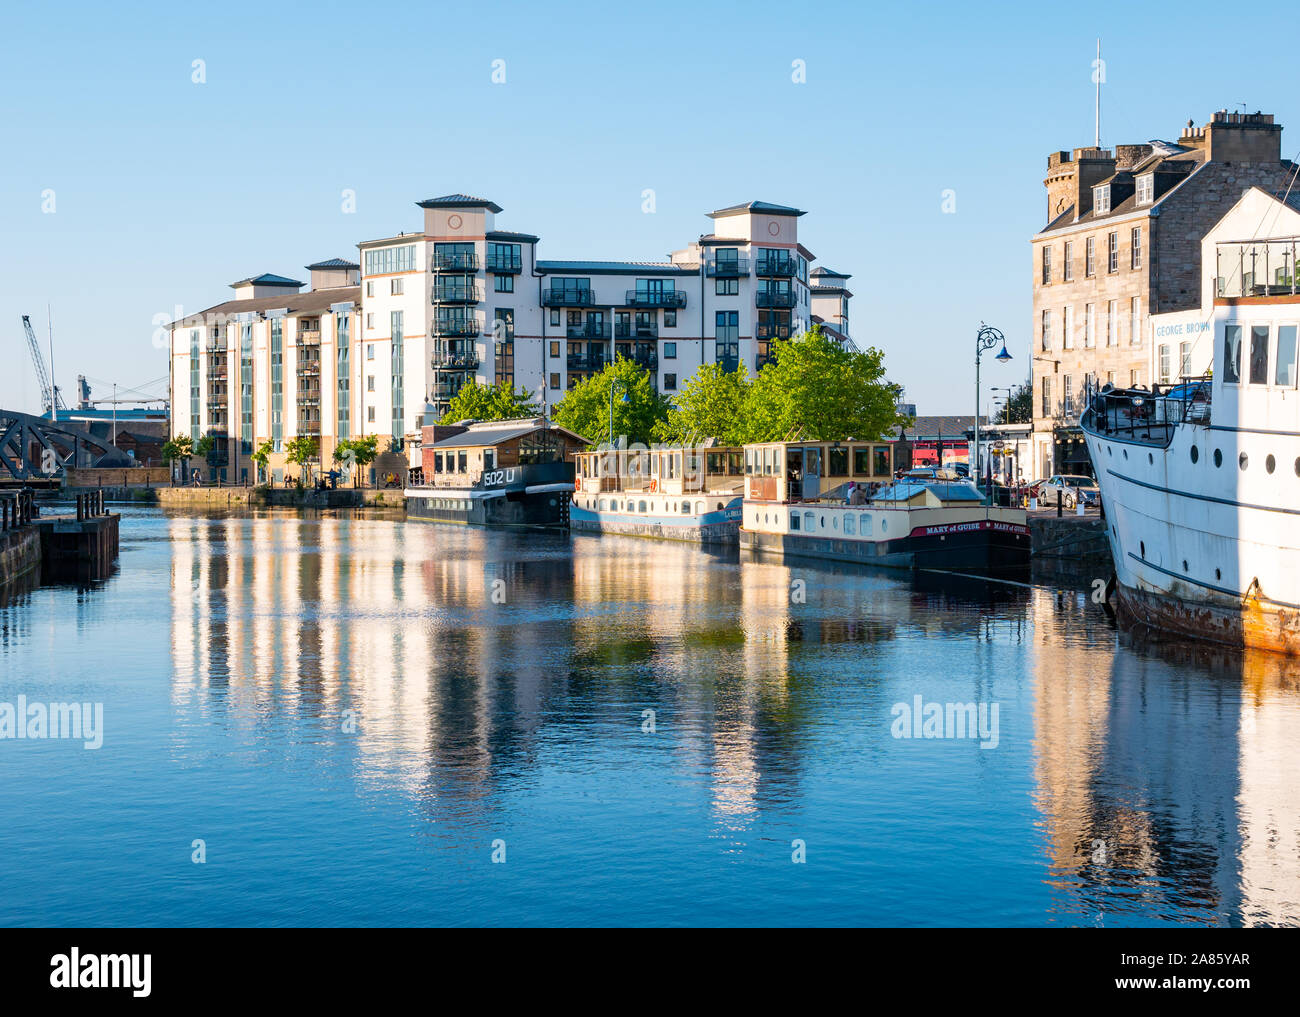 Blocco di appartamenti a barca e riflessioni, acqua di Leith fiume al tramonto, la Riva, Leith, Edimburgo, Scozia, Regno Unito Foto Stock